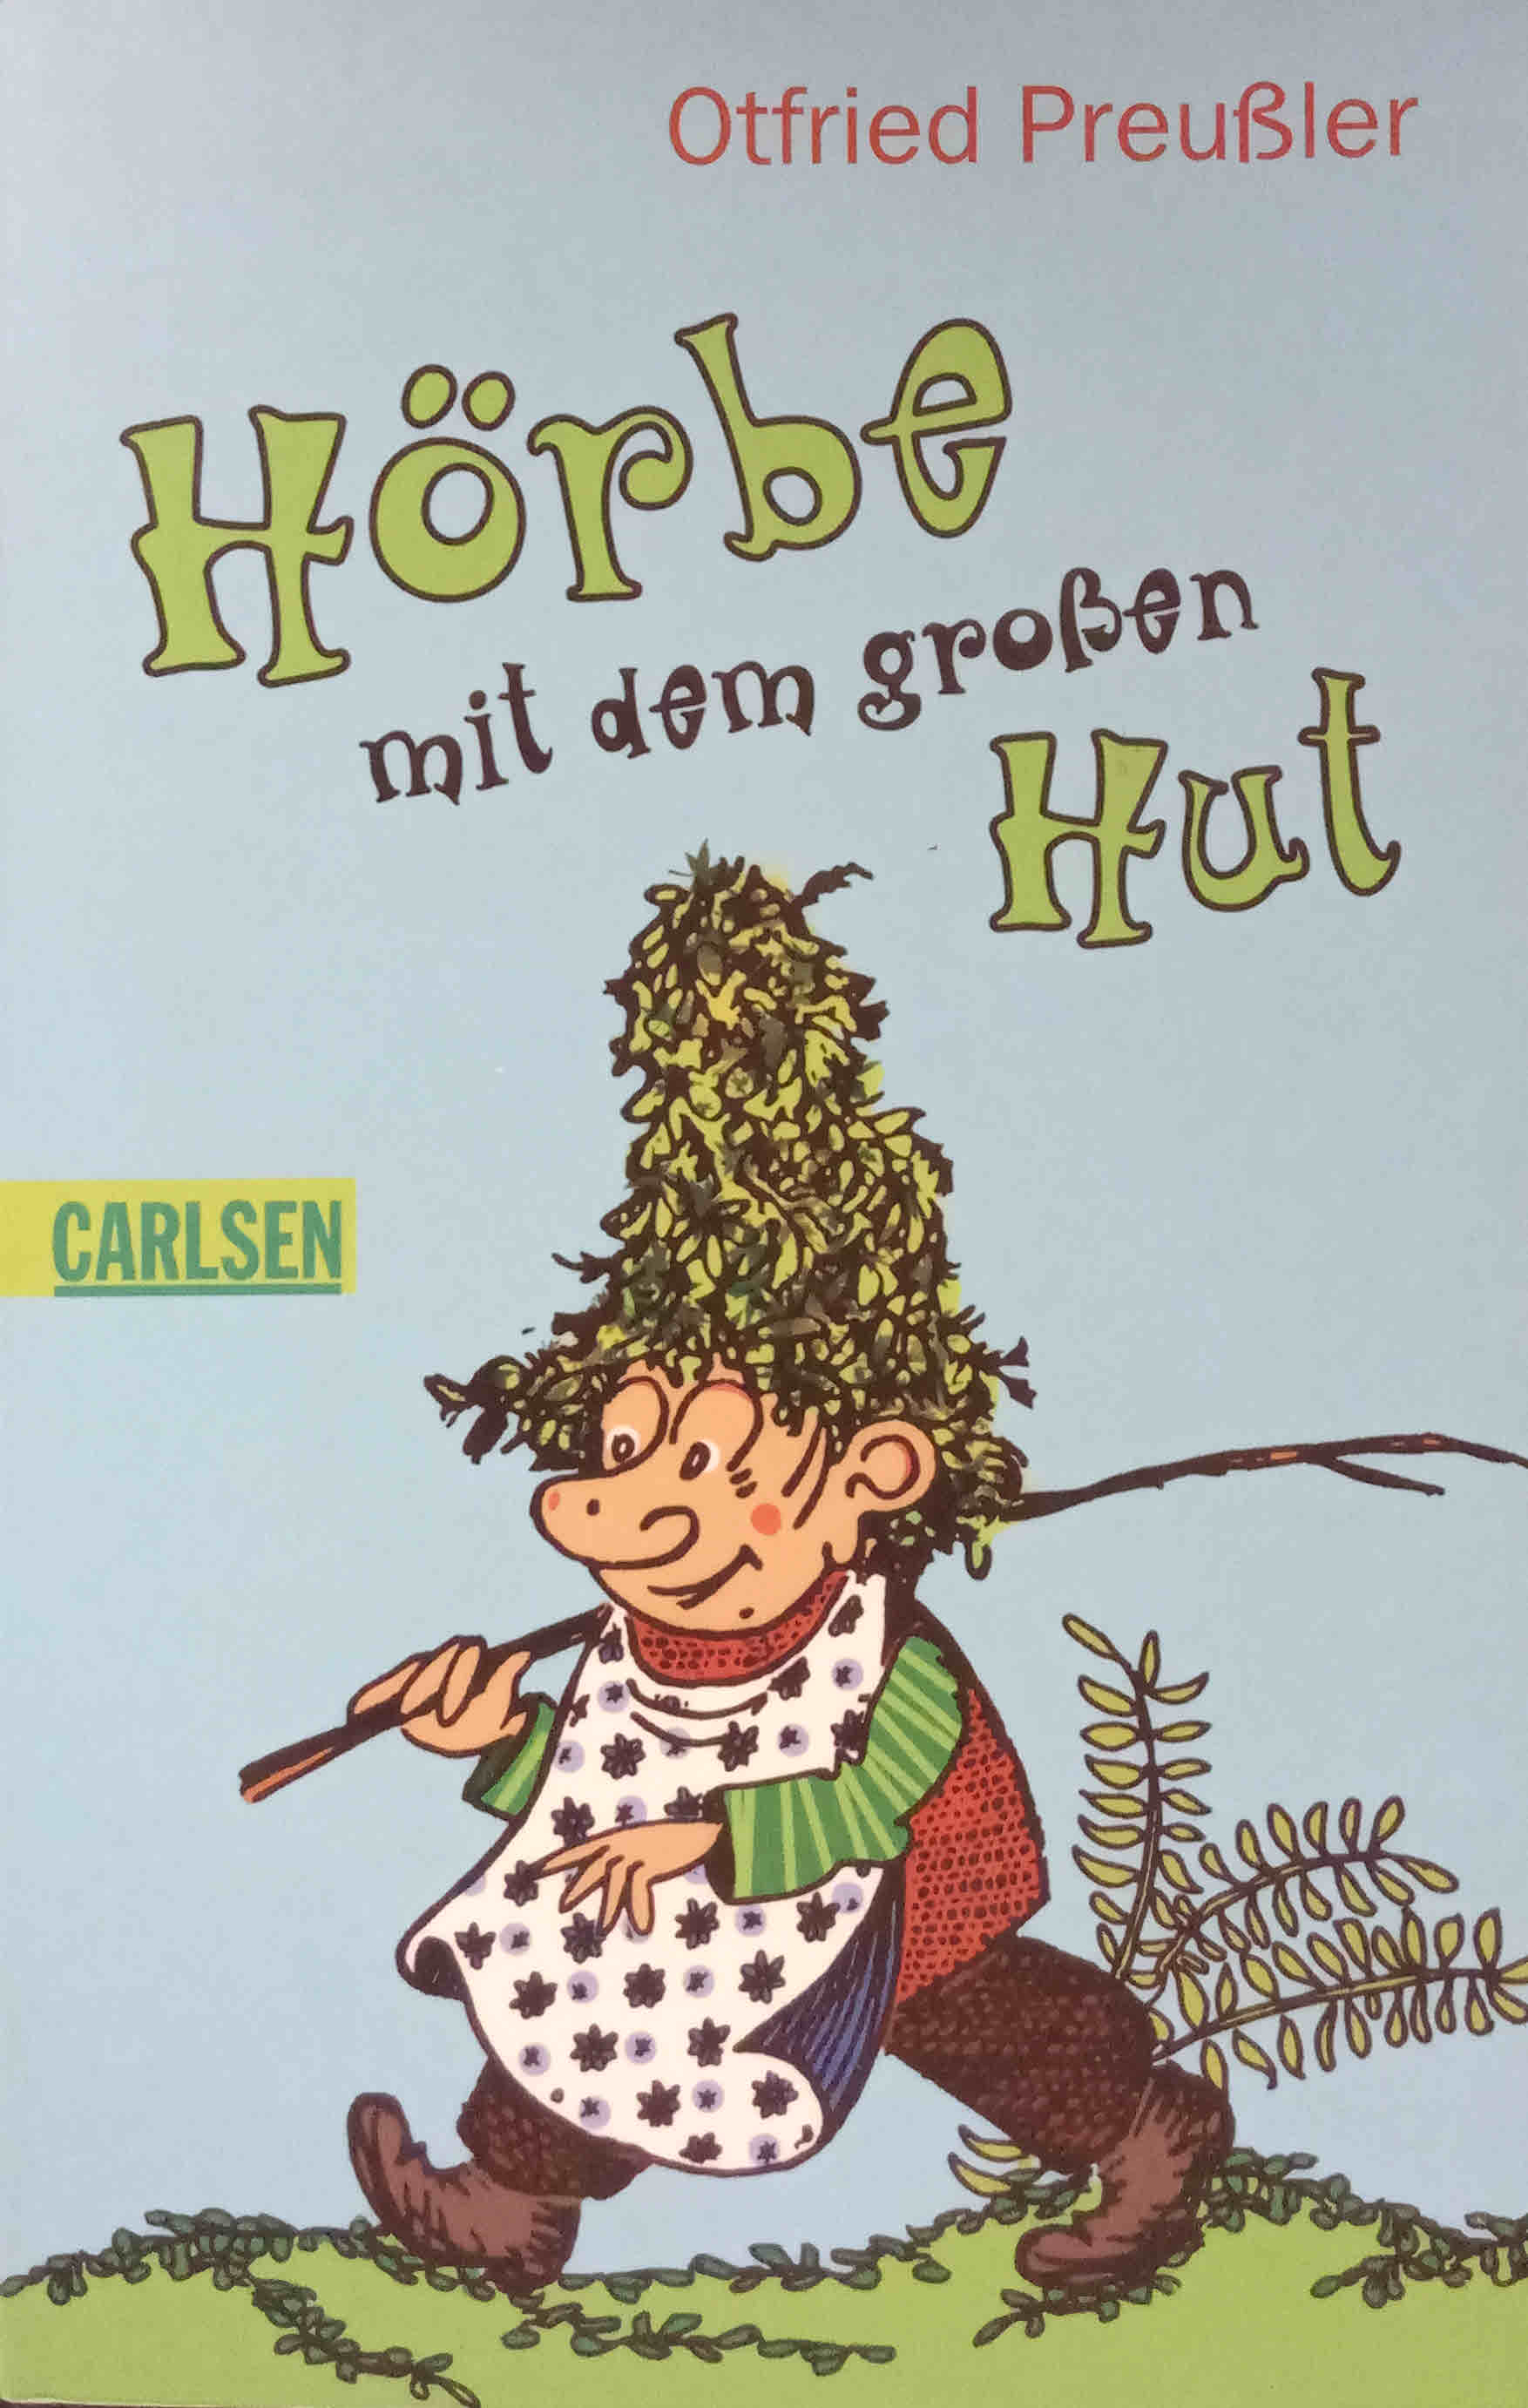 Hörbe mit dem großen Hut : eine Hutzelgeschichte. erzählt und gezeichnet von / Carlsen ; 615 - Preußler, Otfried